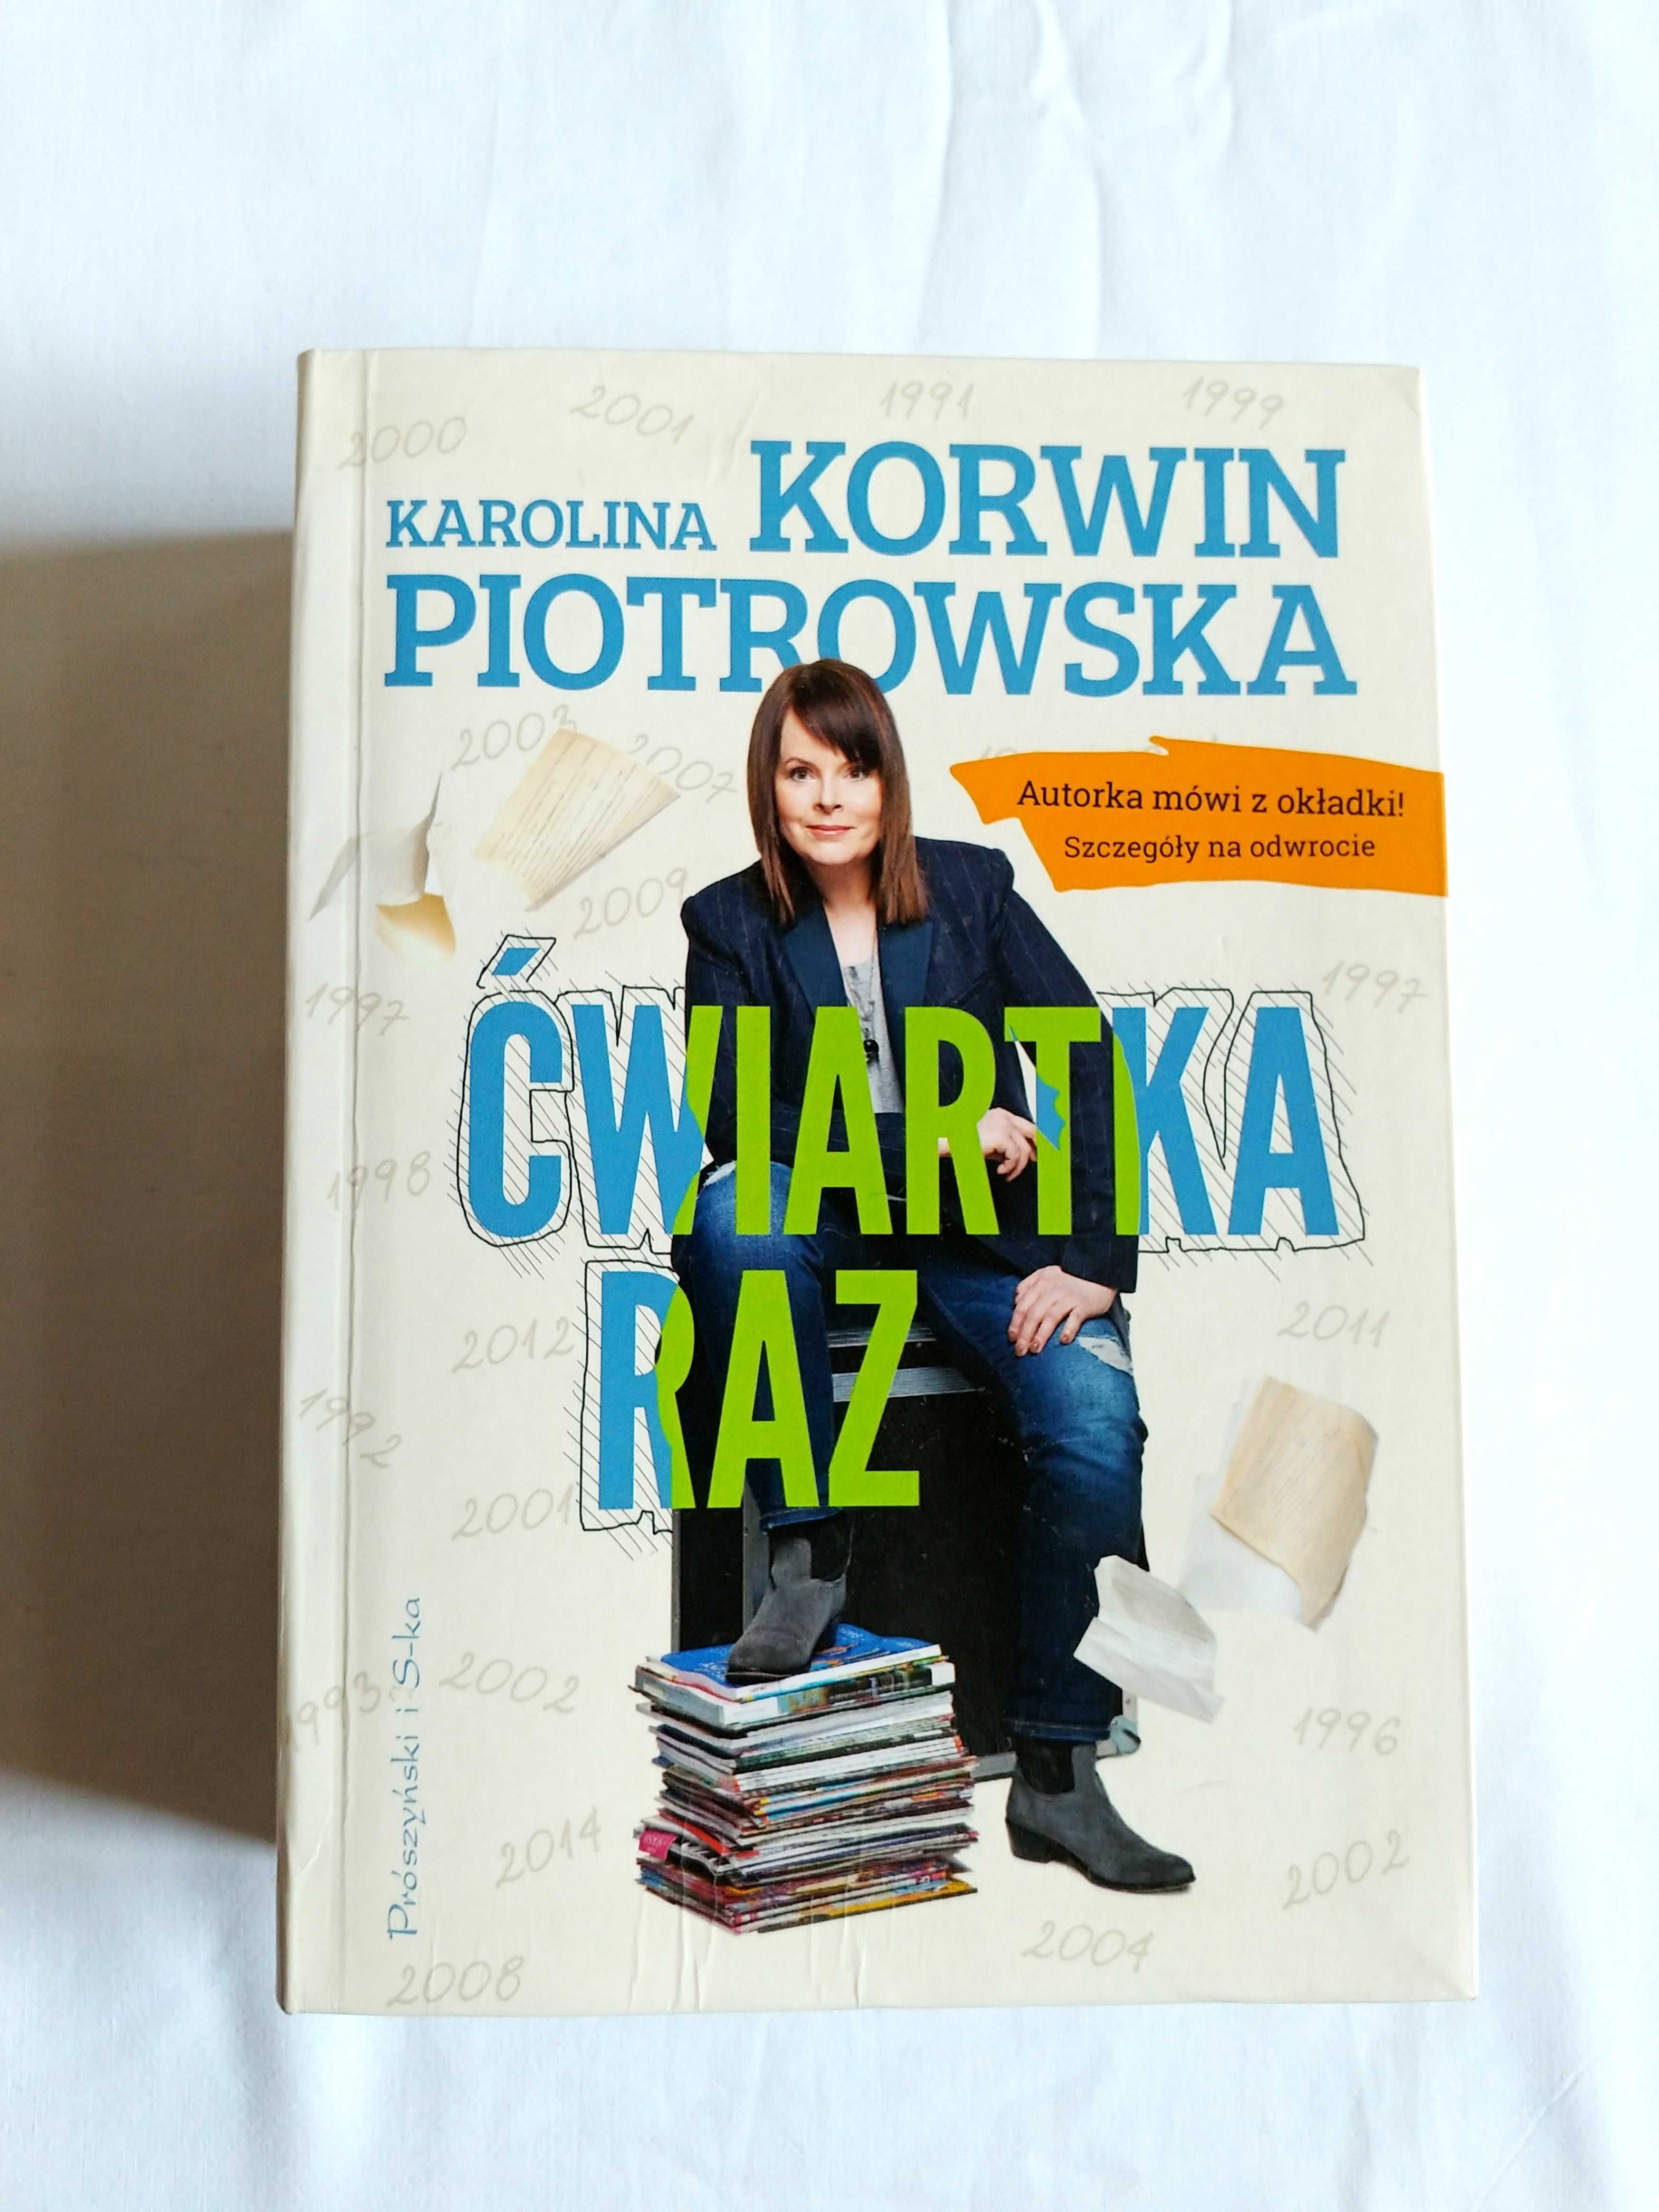 Ćwiartka raz - Karolina Korwin-Piotrowska (Prószyński i S-ka)